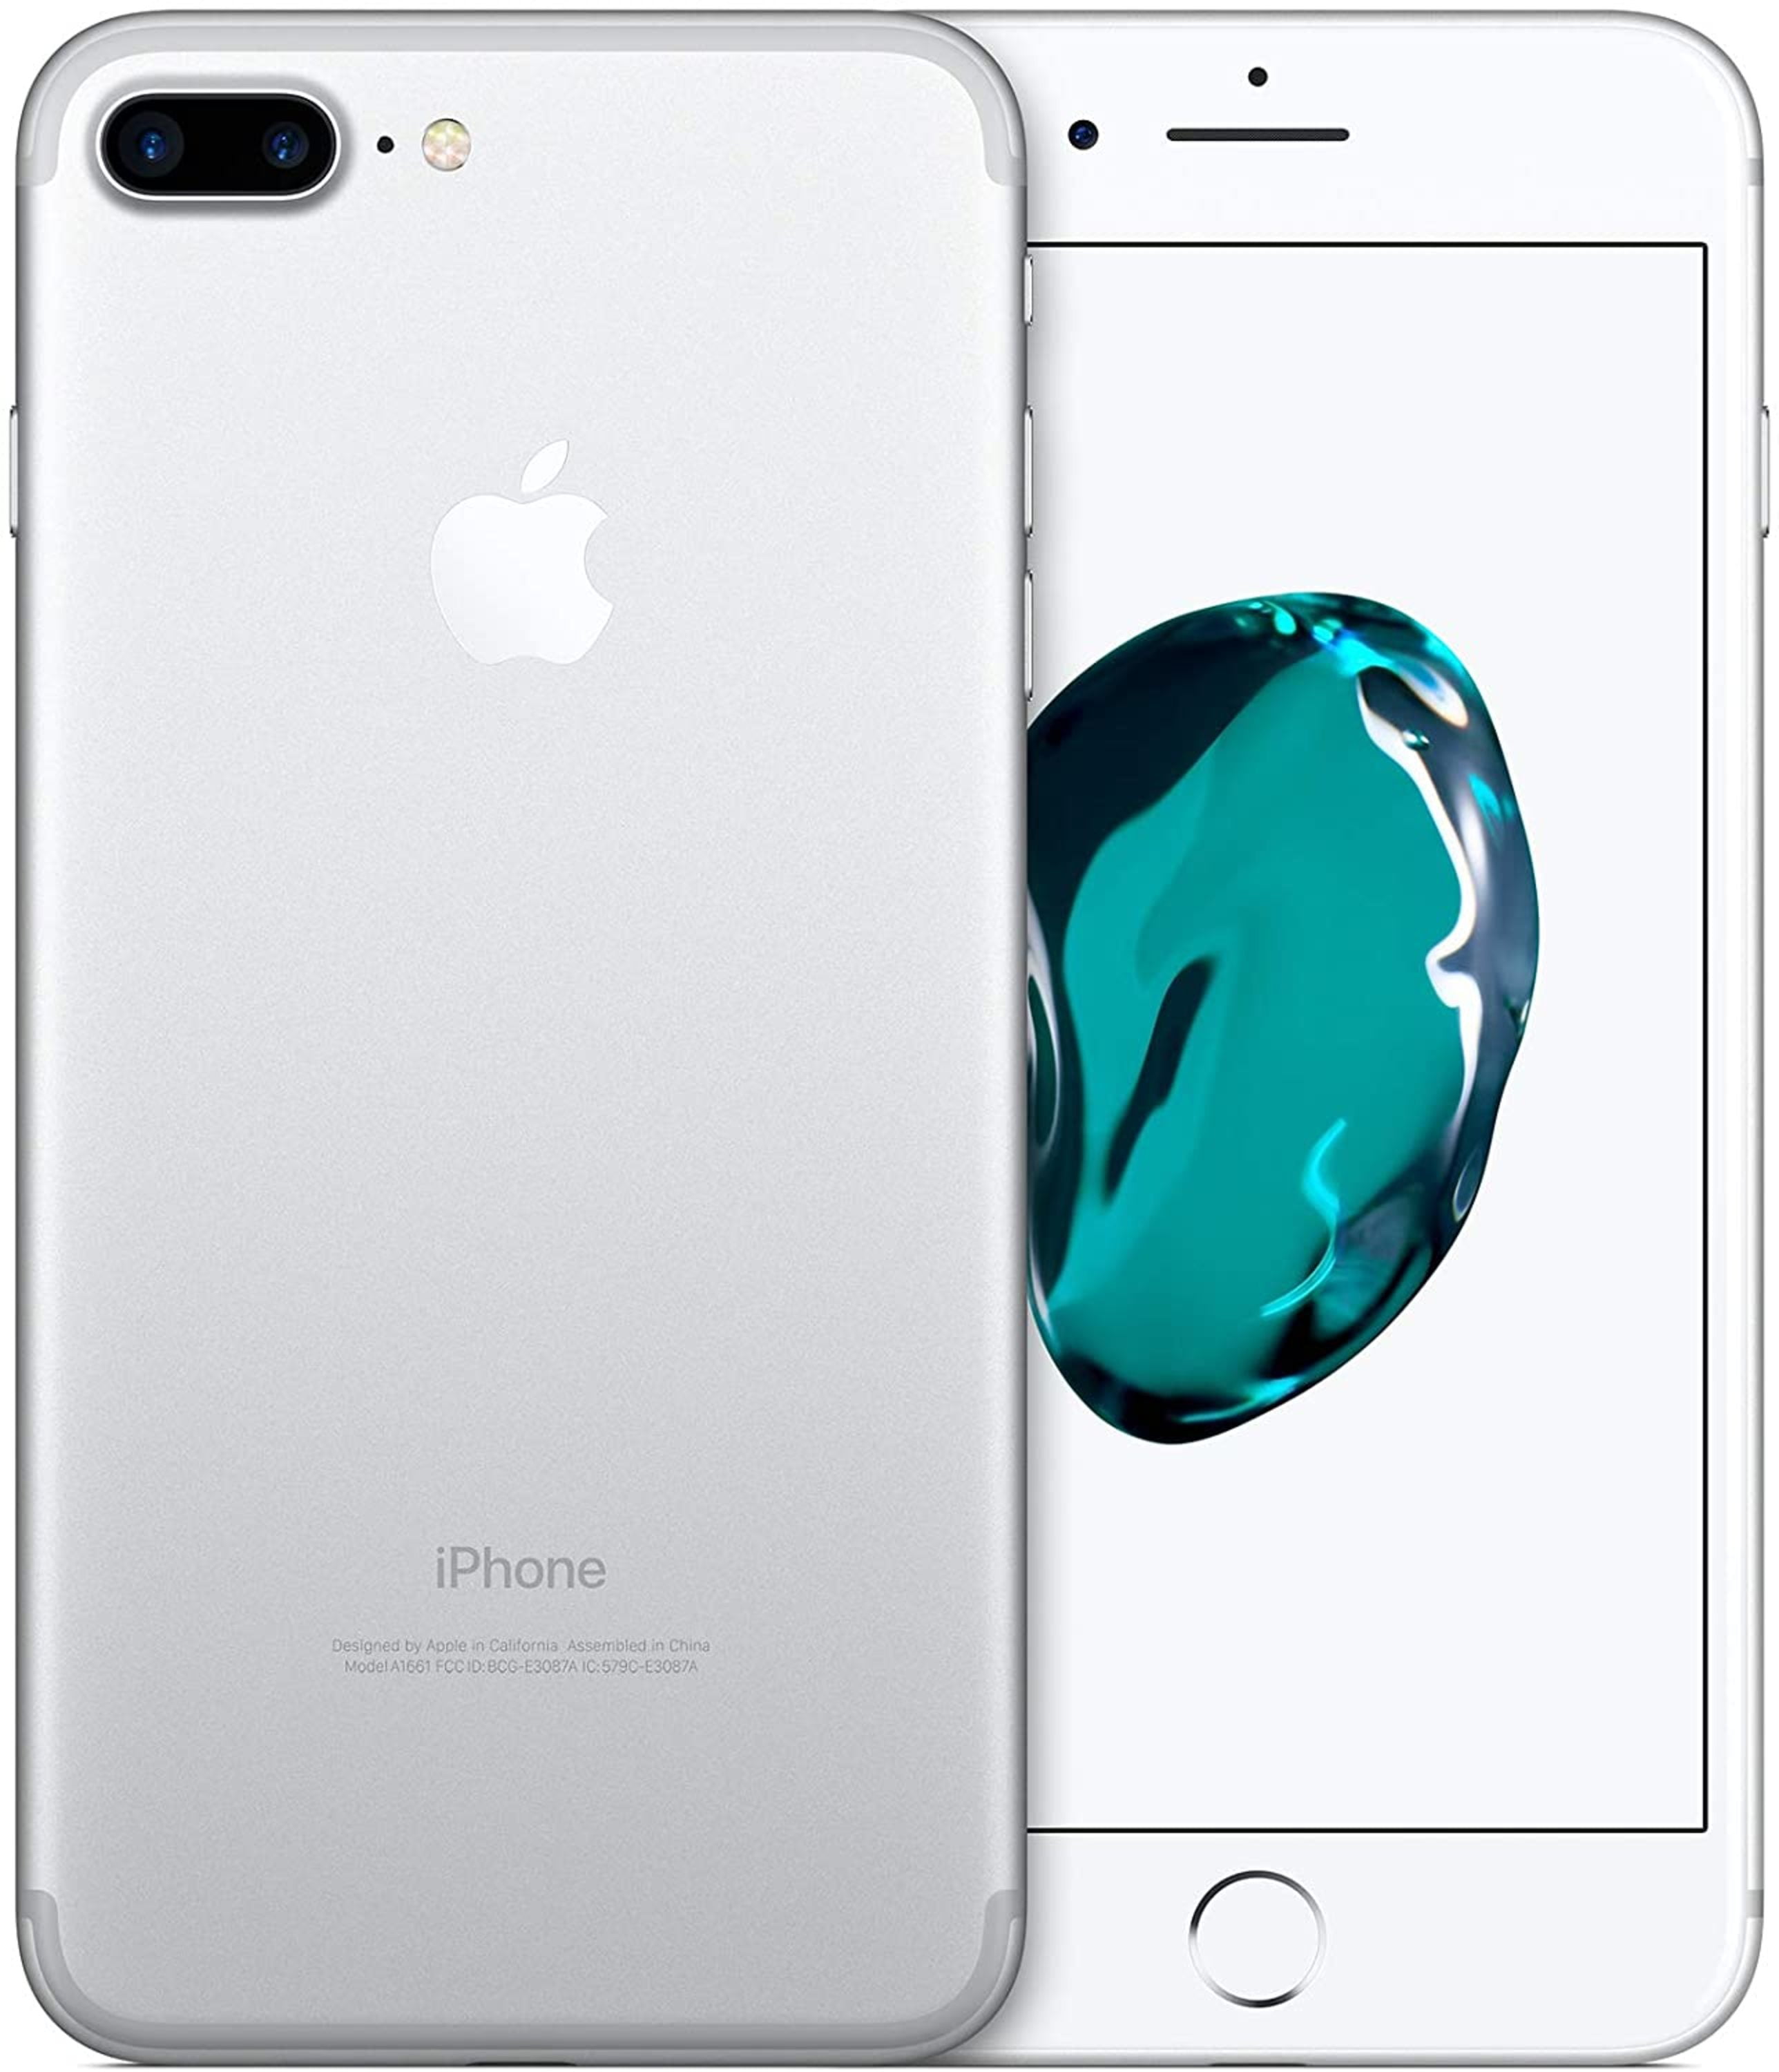 Apple iPhone 7 Plus 128GB Unlocked GSM 4G LTE Quad-Core 